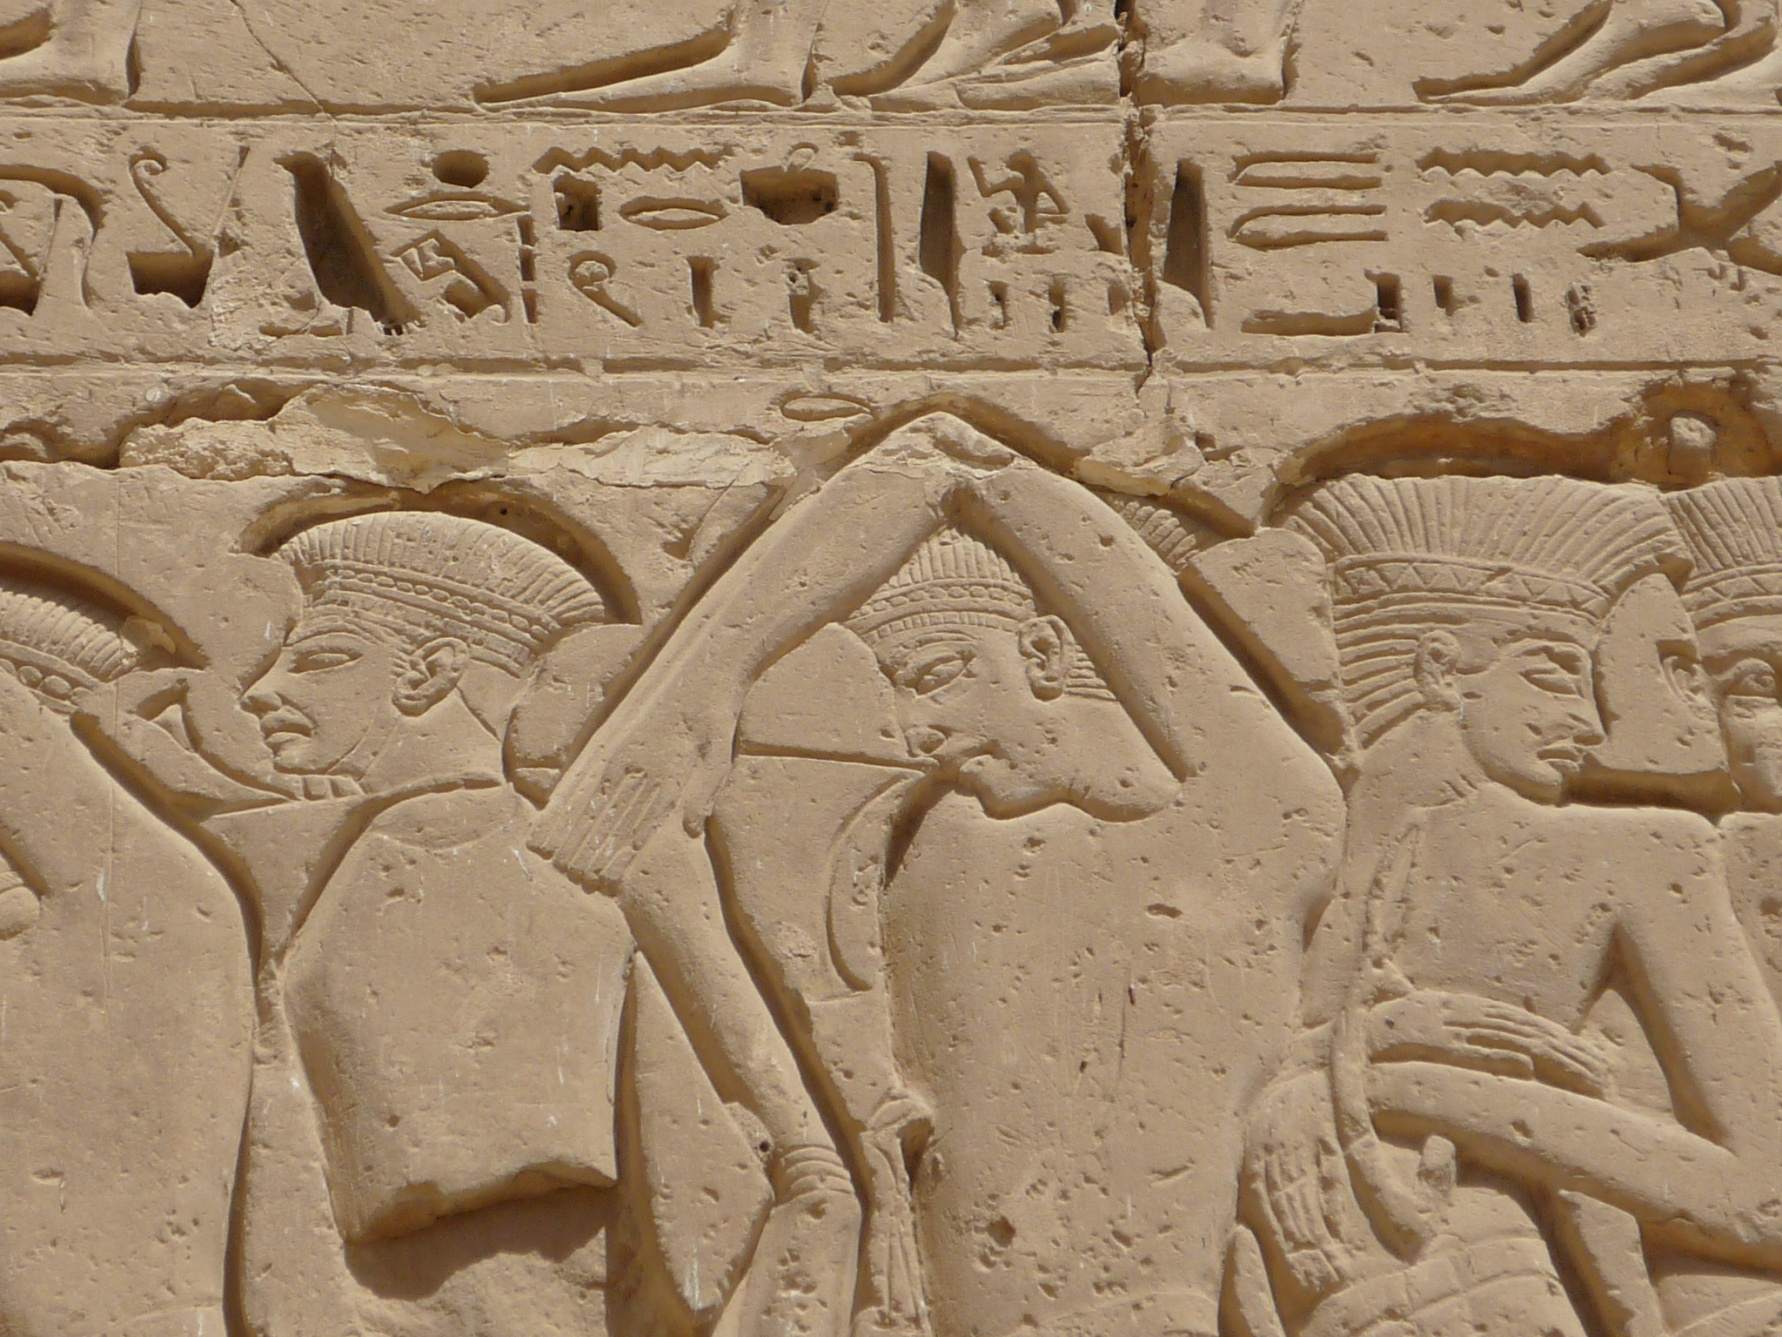 Relief showing Sea Peoples being taken as prisoners by Egyptian Pharoah Ramses III.